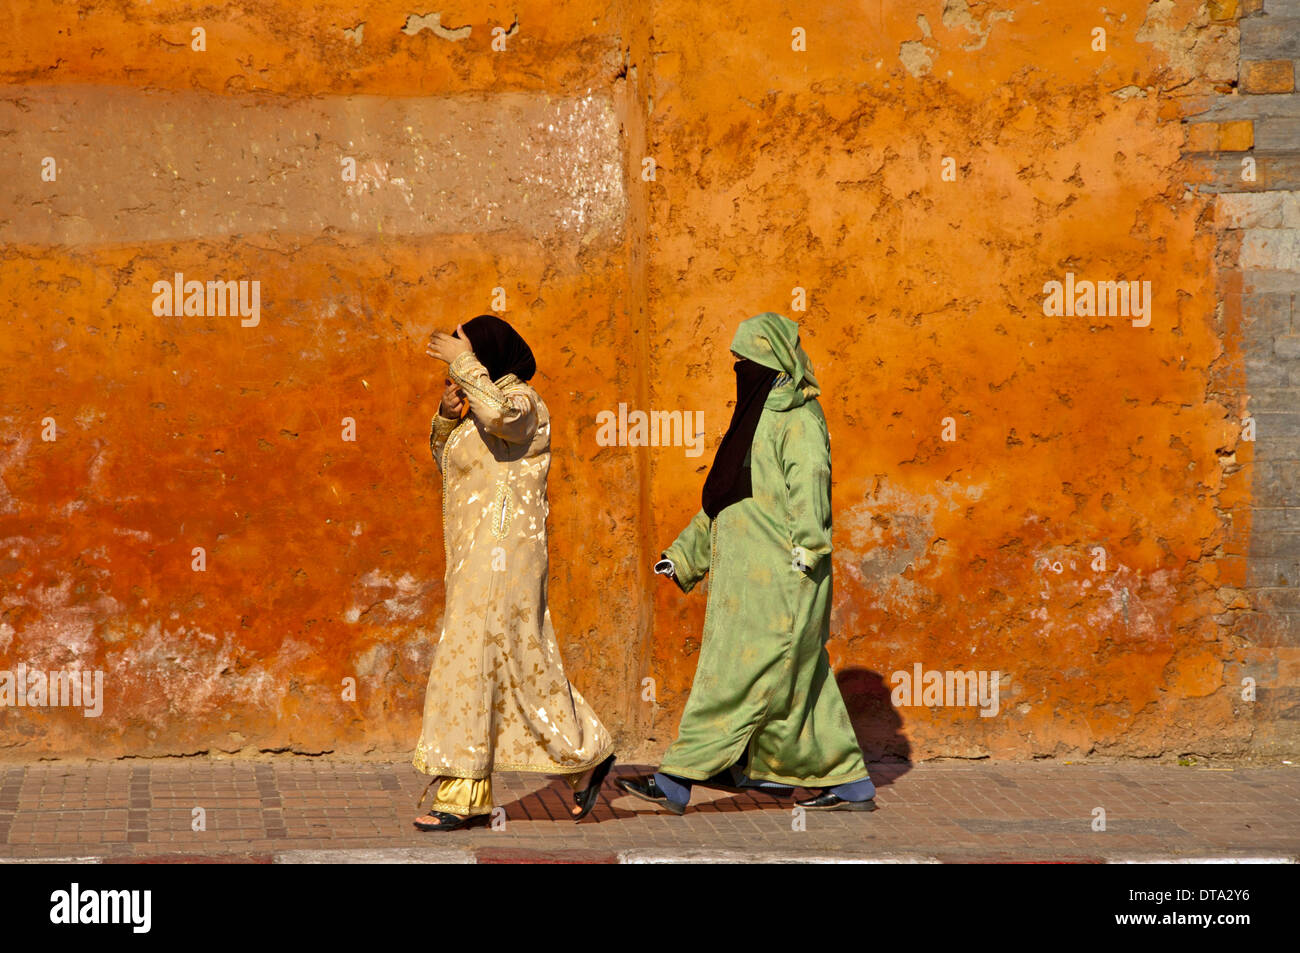 Frauen in traditioneller Kleidung, Jellaba, Kopftuch und Gesicht Schleier,  Niqab, Medina oder Altstadt, Marrakesch, Marokko Stockfotografie - Alamy